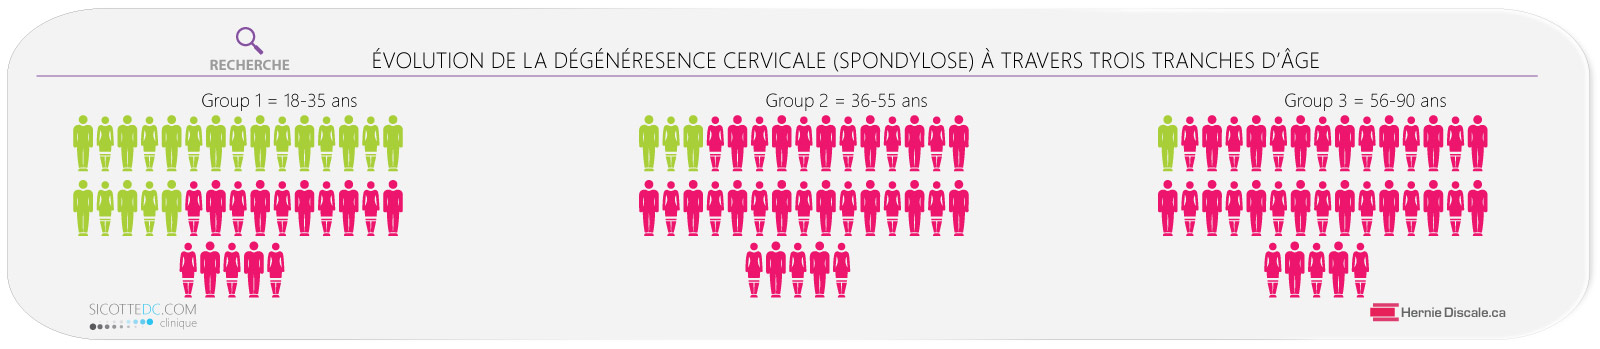 L'évolution de la dégéréresence (arthrose) cervicale a travers trois trance d'age - spondylose cervicale